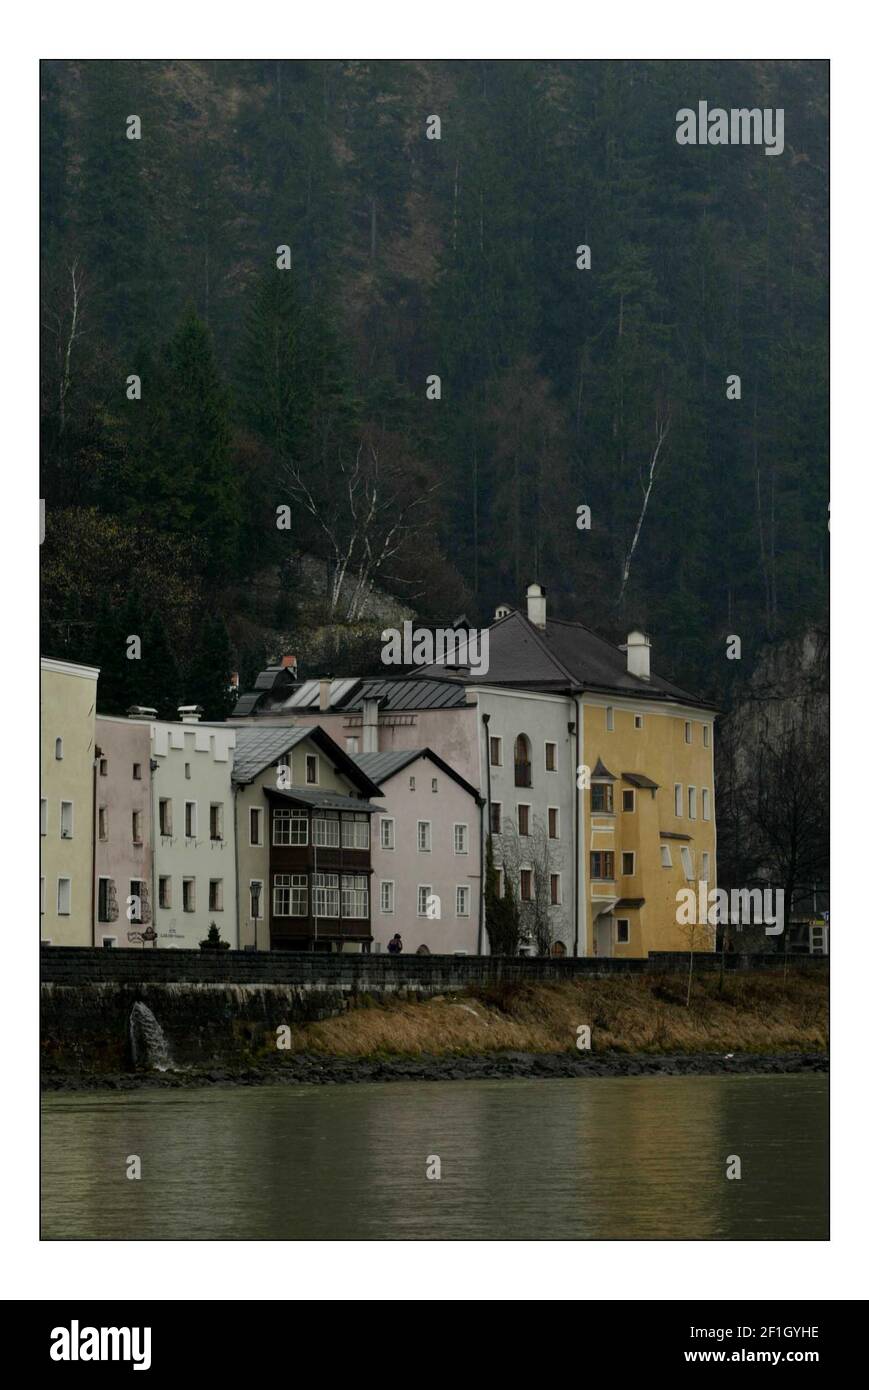 Rattenberg, la plus petite ville d'Autriche, vivant à l'ombre de la montagne Stadtberg, prévoit d'installer une banque de trente miroirs géants pour refléter le soleil d'hiver dans les rues.pic David Sandison 24-25/3/2005 Banque D'Images